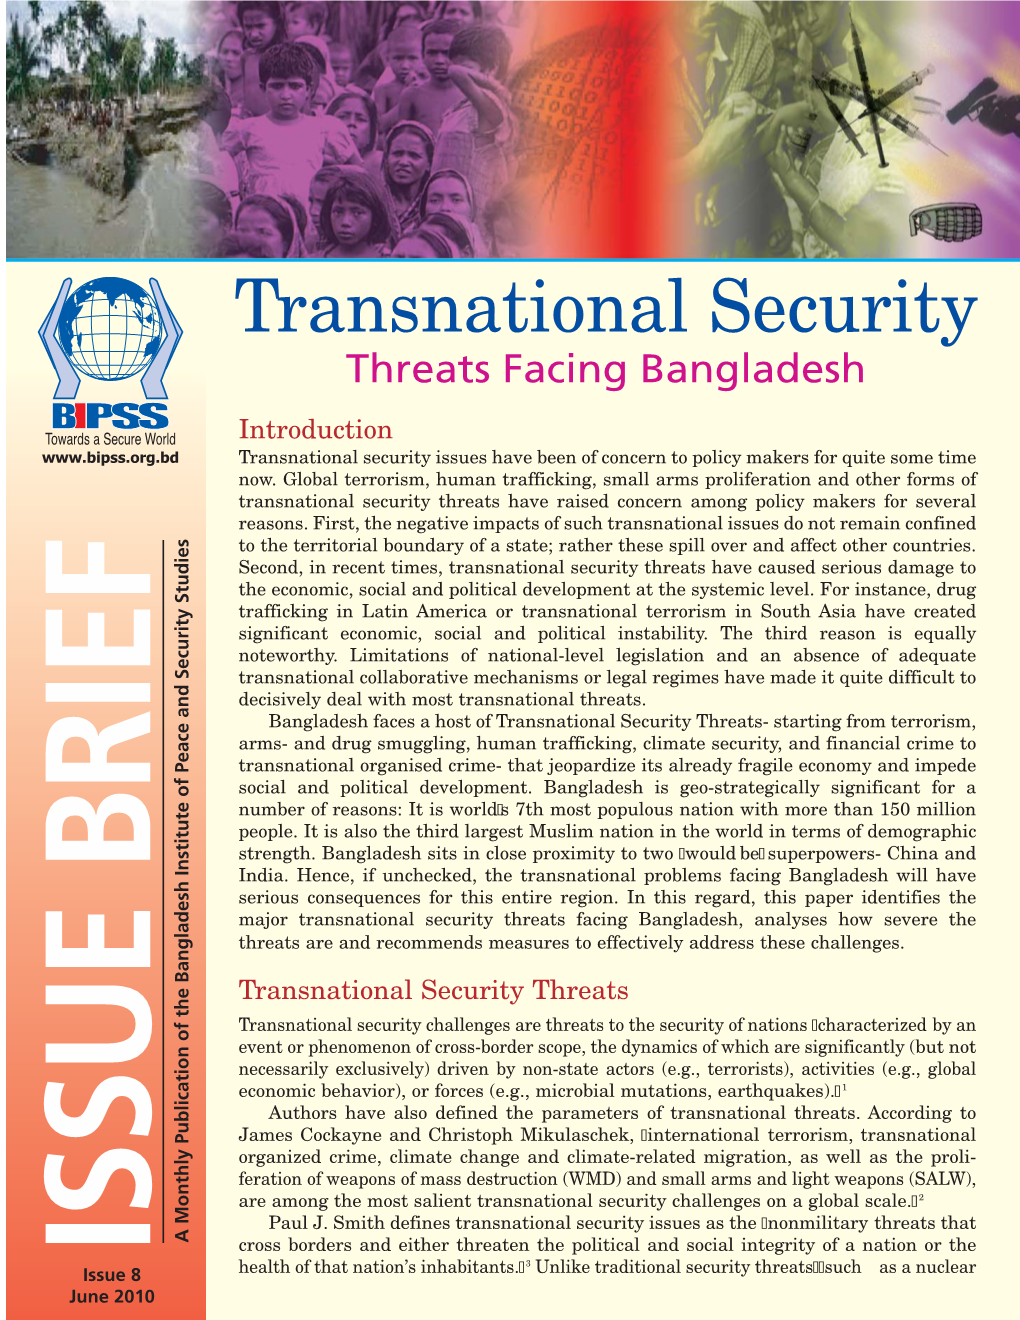 Transnational Security: Threats Facing Bangladesh